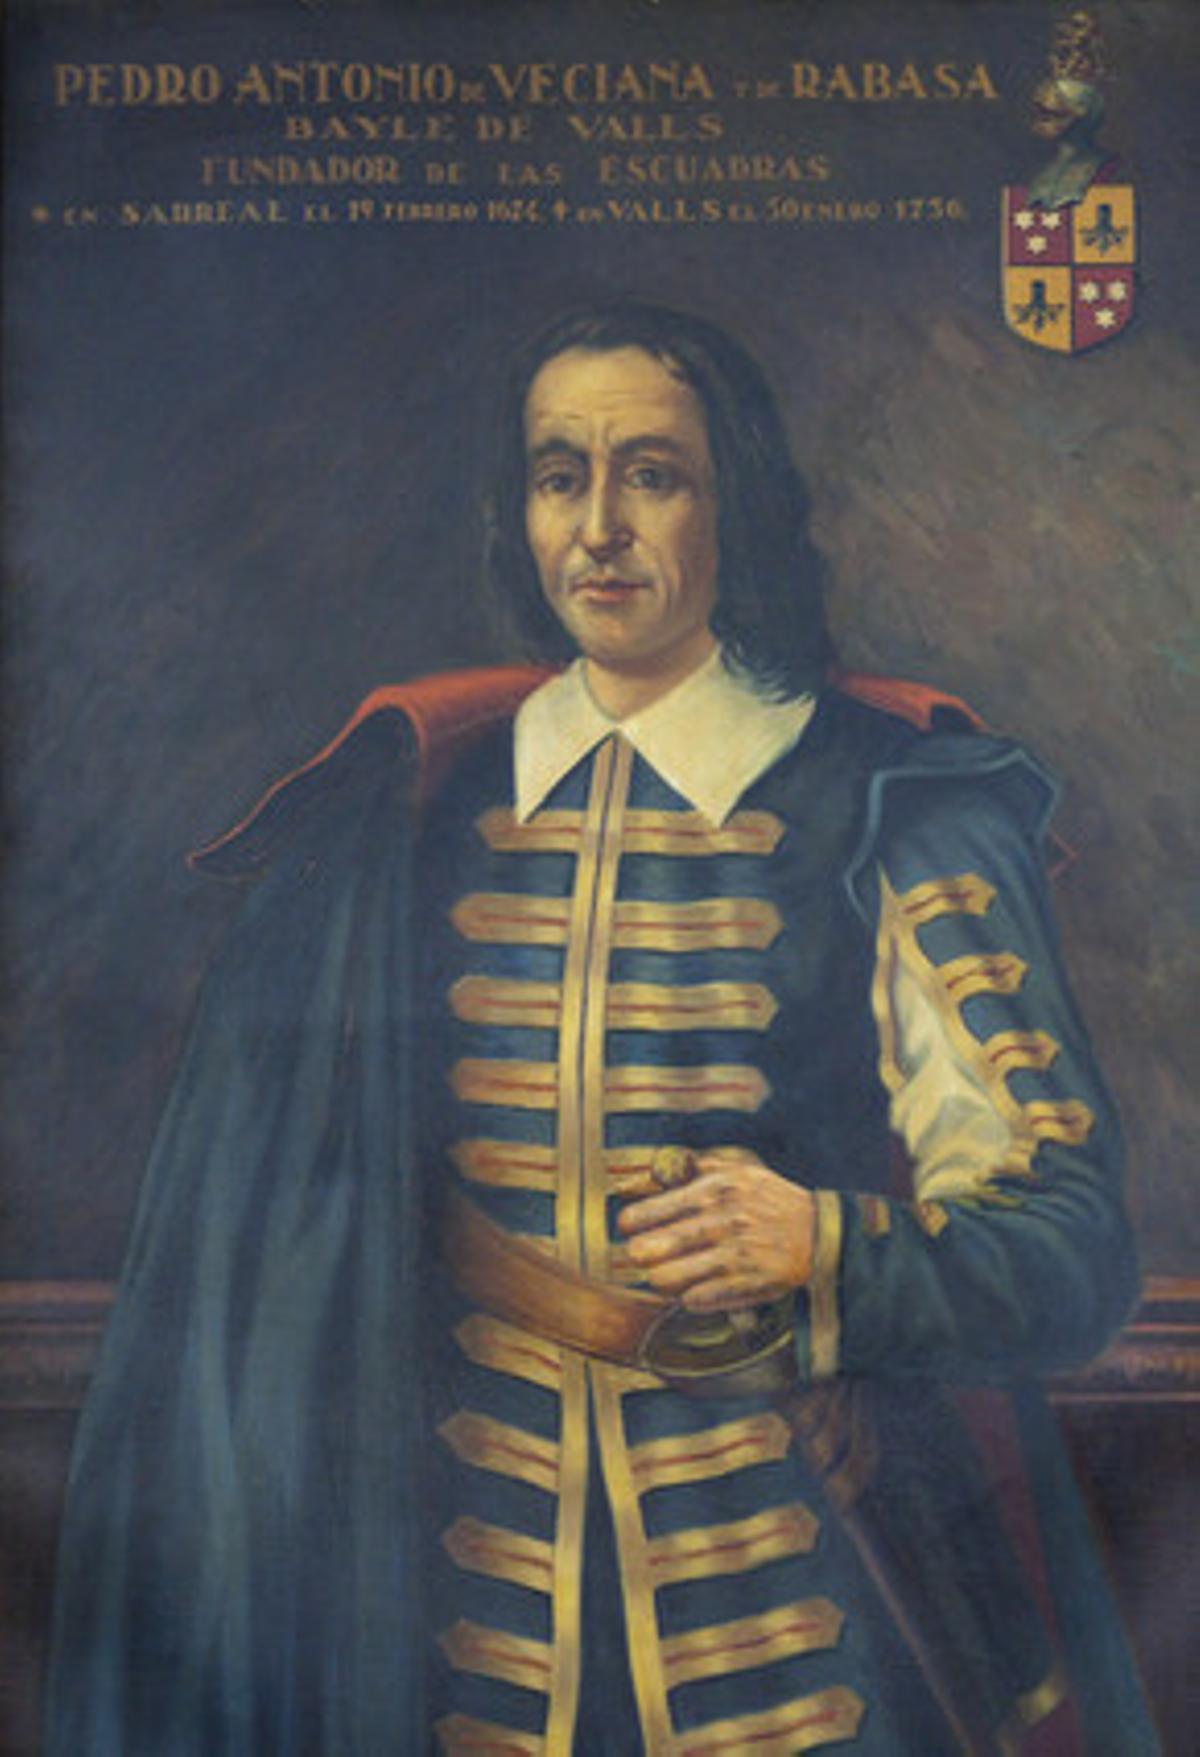 El fundador dels Mossos, Pedro Antonio de Veciana.